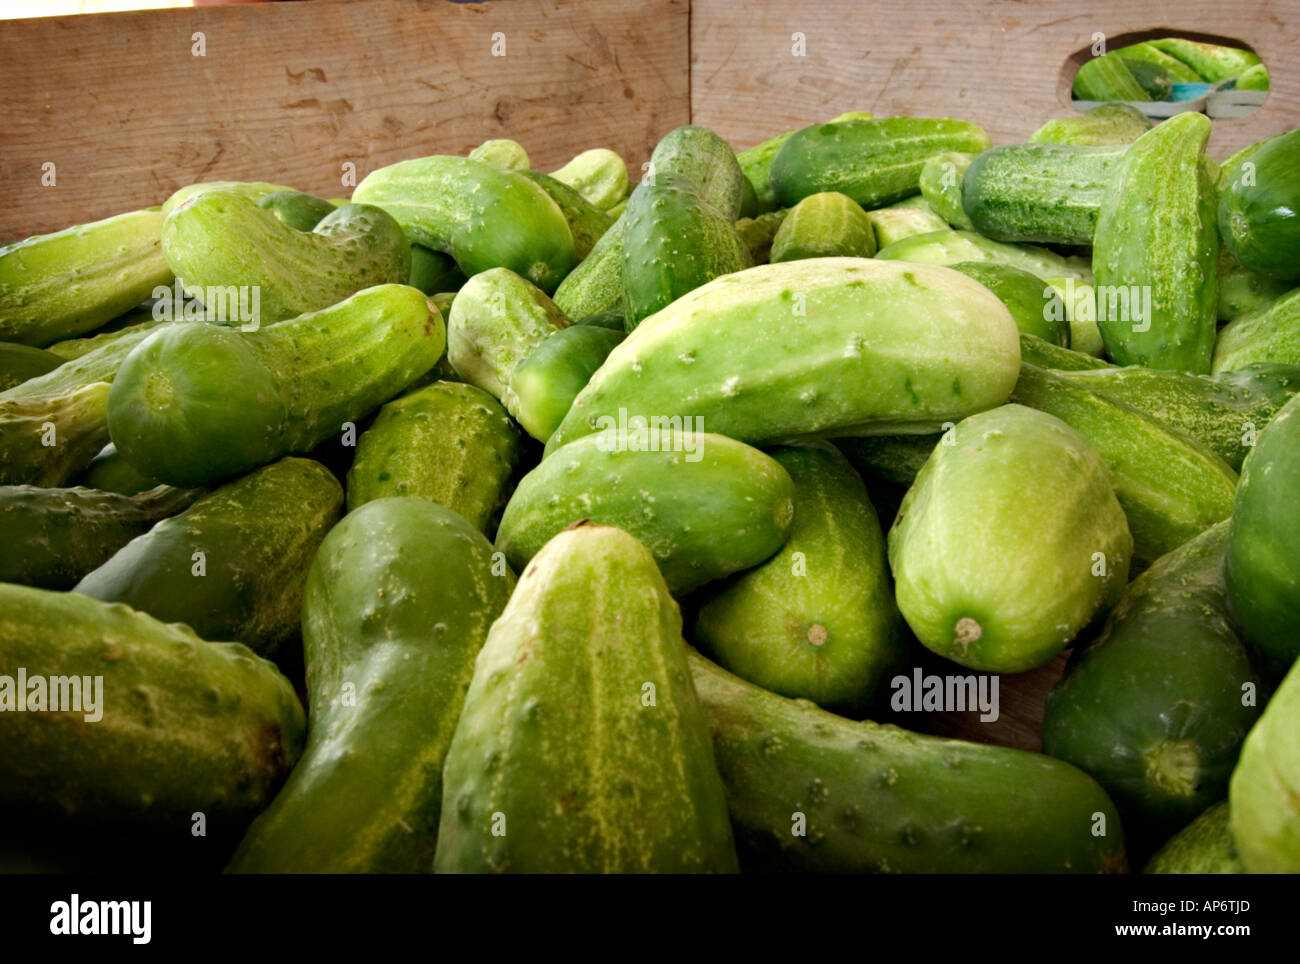 bin of cucumbers Stock Photo